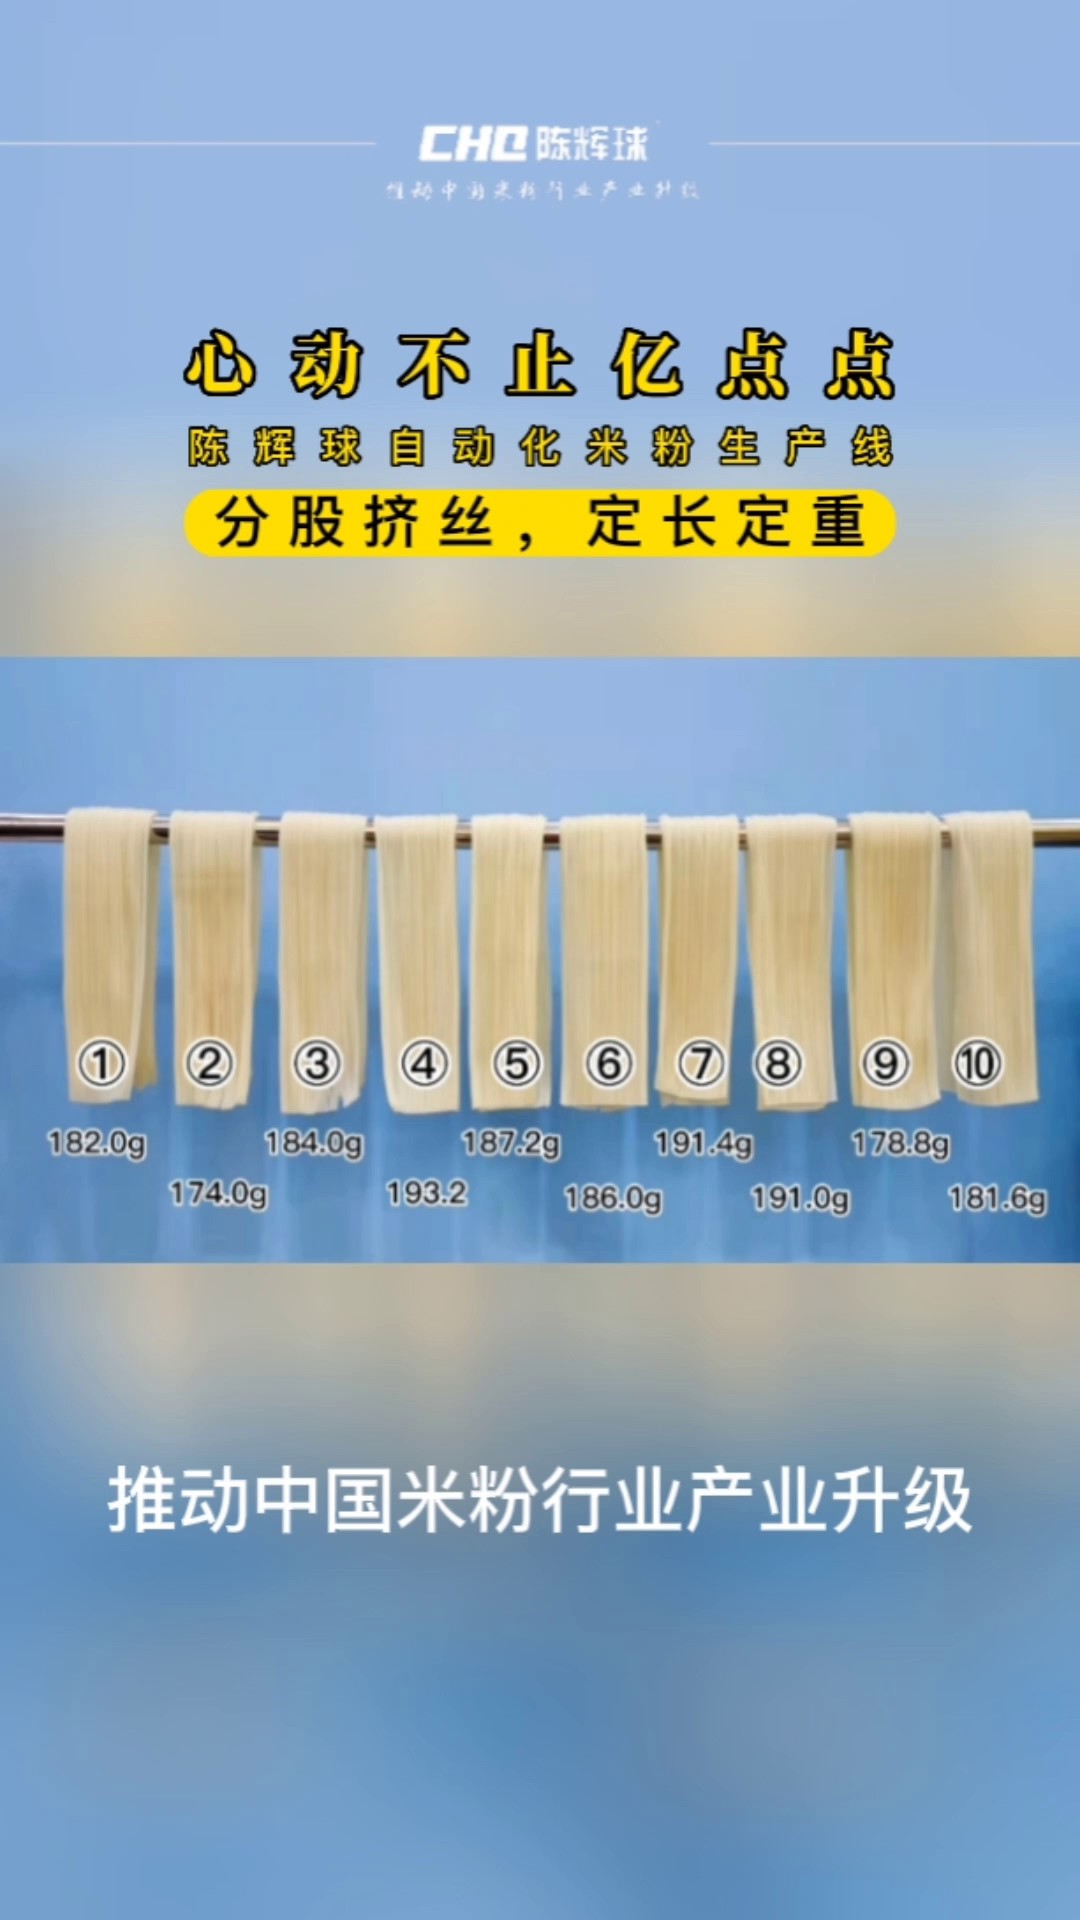 陈辉球品牌米粉生产线哪里买,米粉生产线